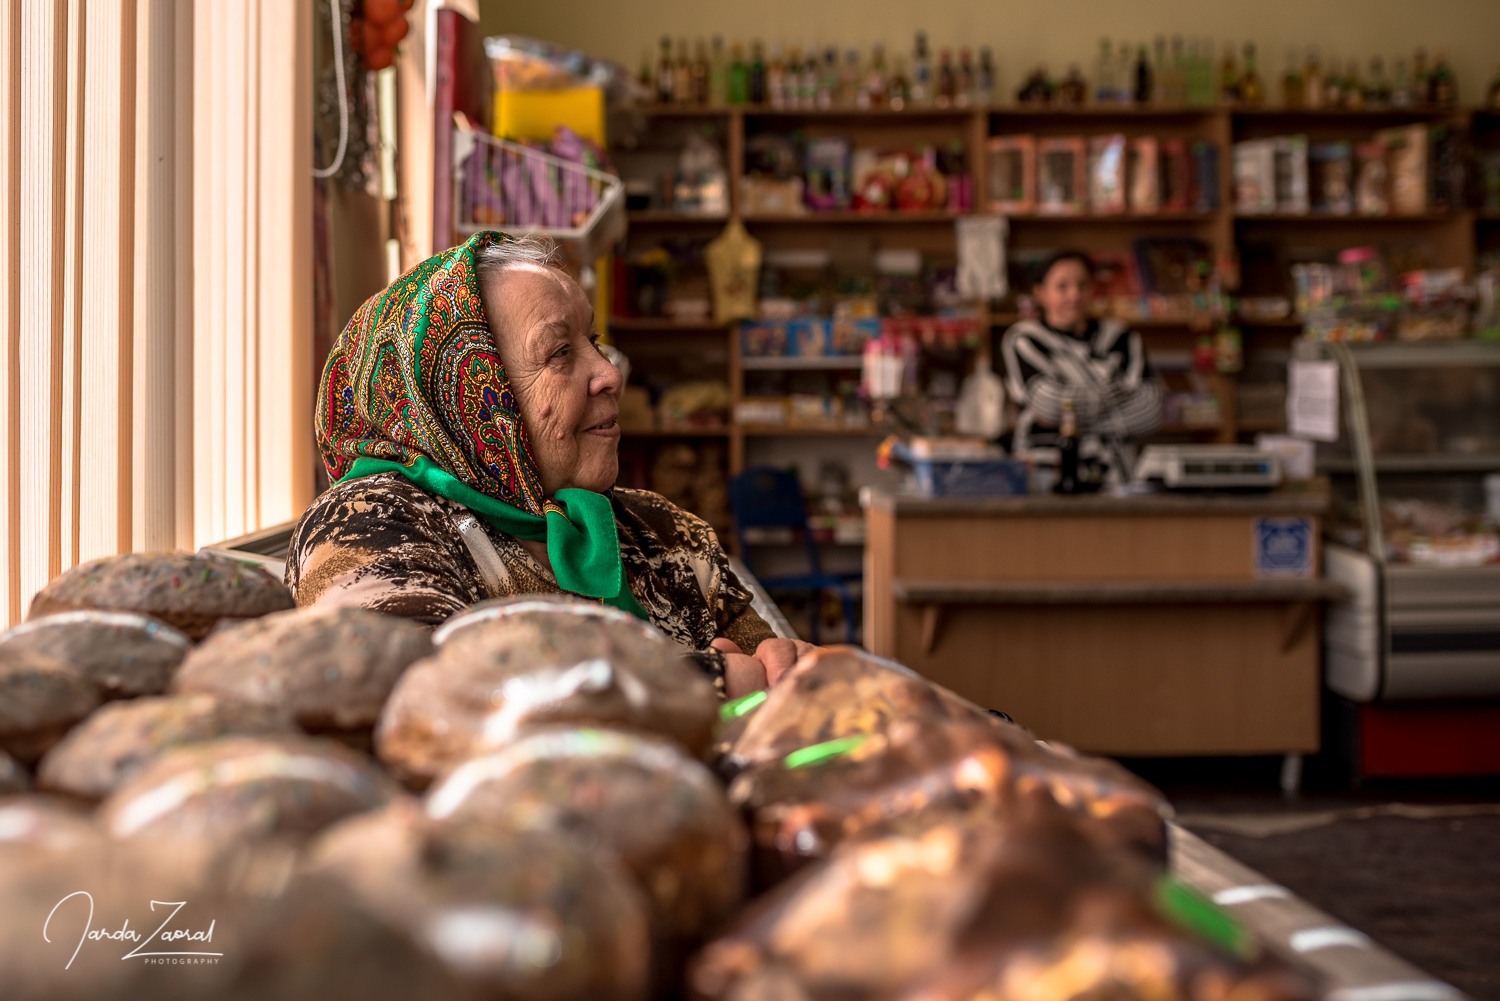 Babushka selling Easter cakes in Moldova